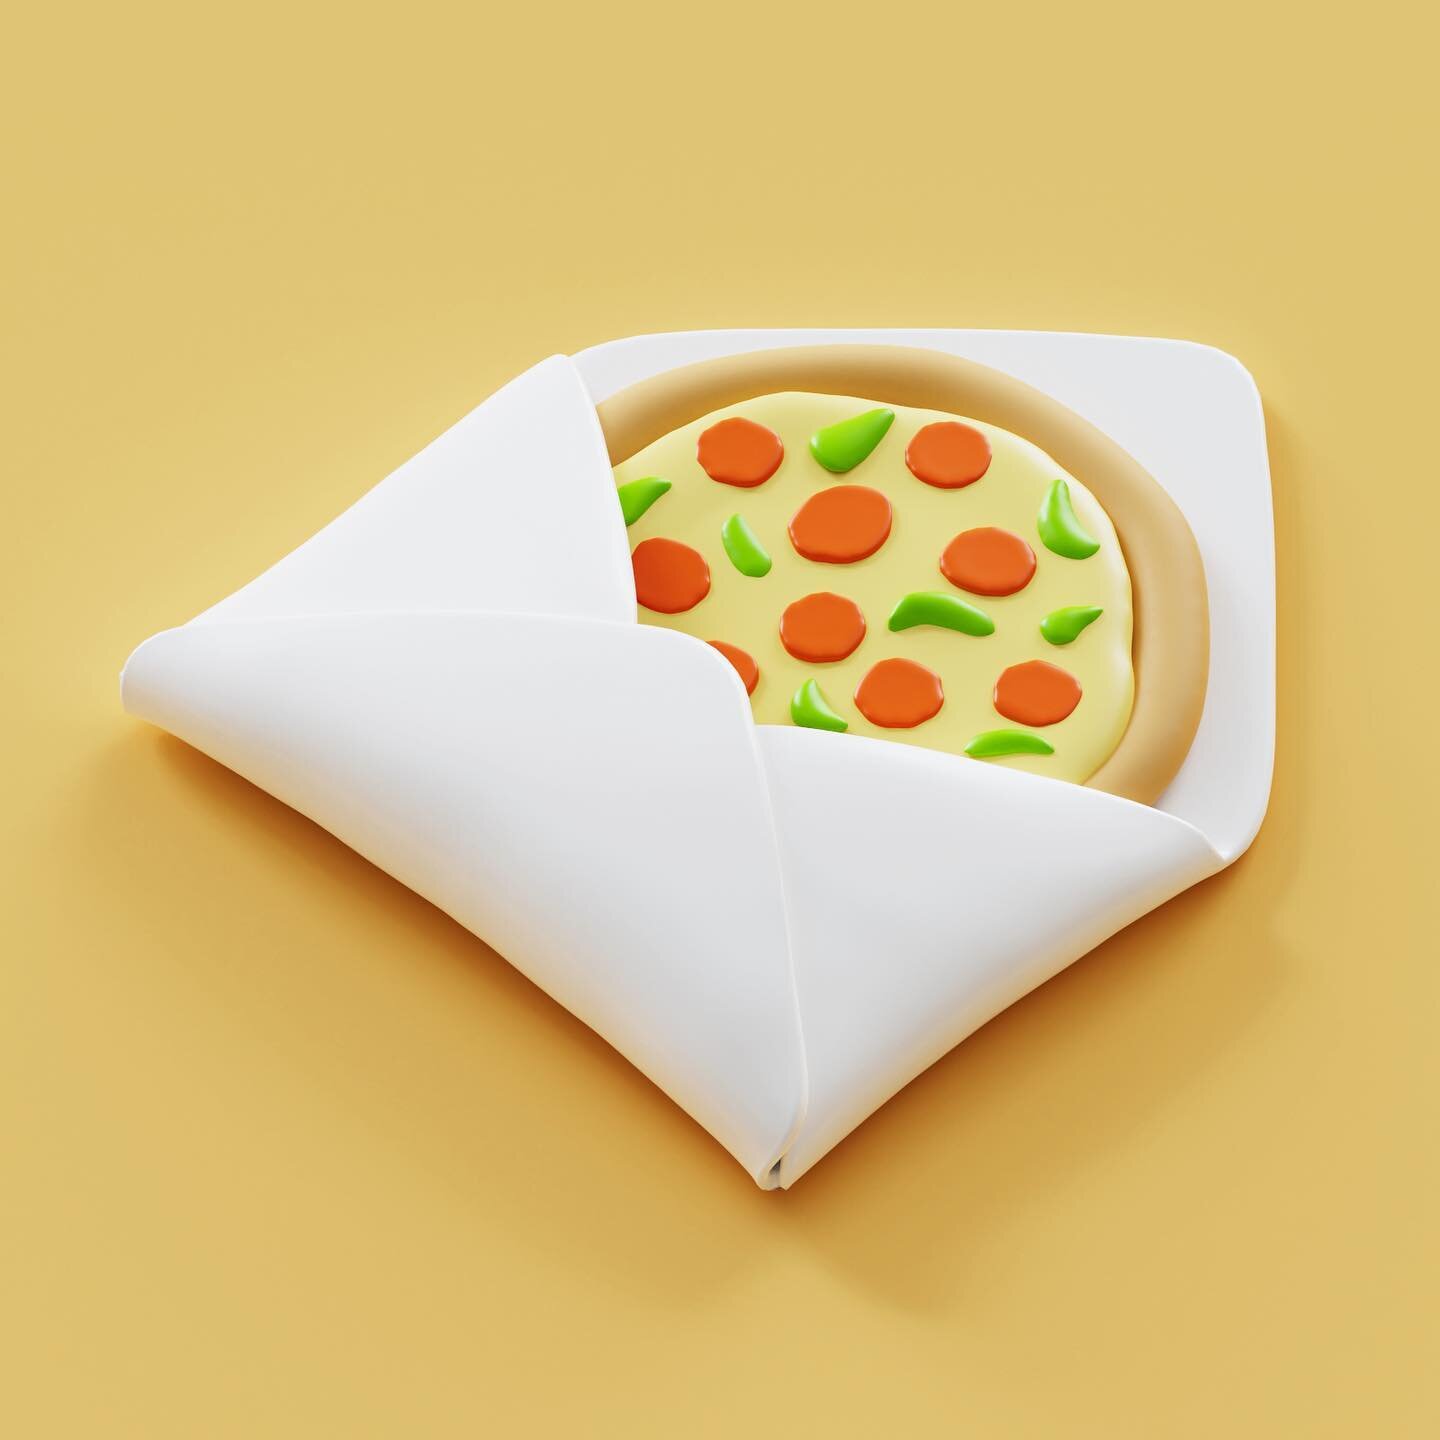 Pizza delivery ✨#3d #3dart #3dillustration #3drender #blender #blender3d #cyclesrender #zbrush #zbrushsculpt #pizza